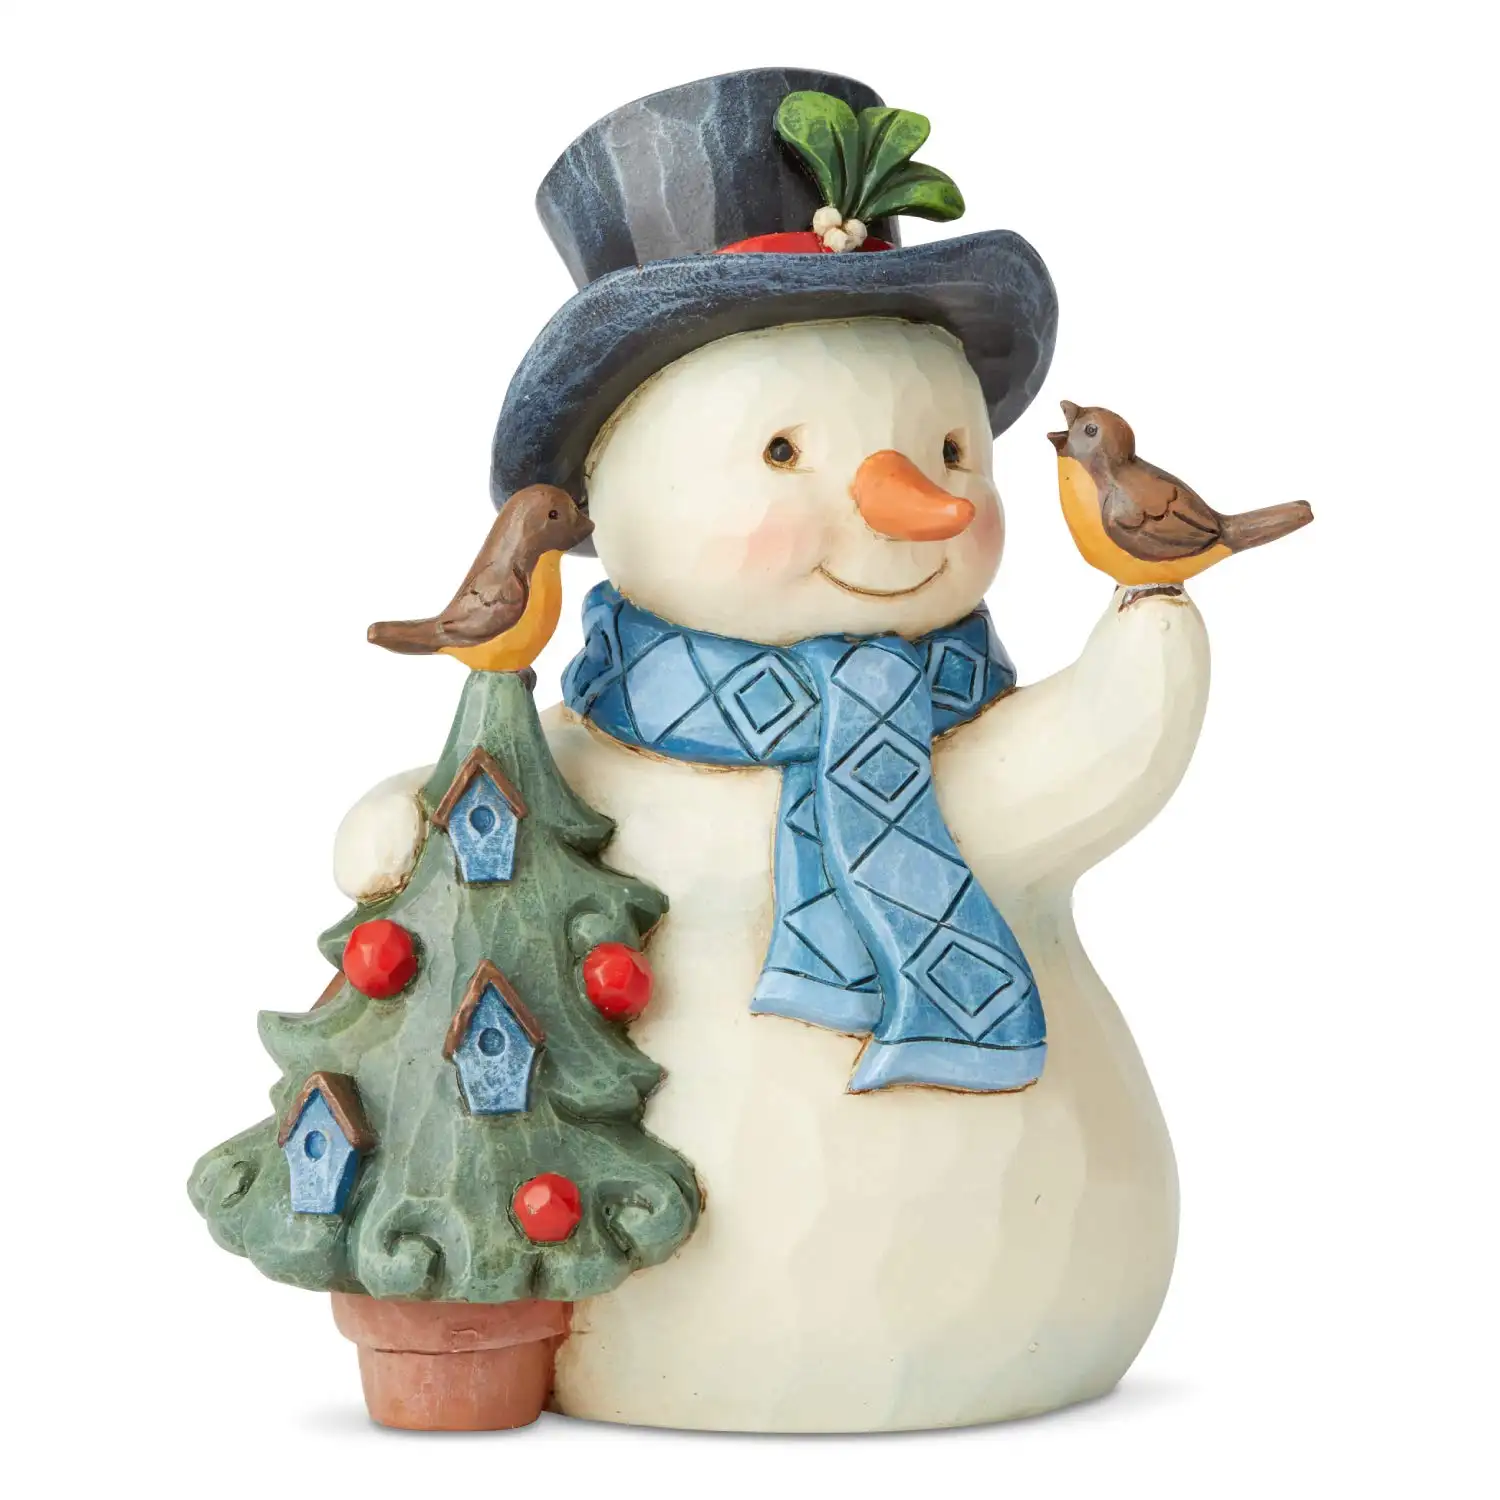 Bonhomme de neige avec arbre et oiseau petite figurine en résine Adorable cadeau bonhomme de neige de Noël décoration de vacances et de la maison